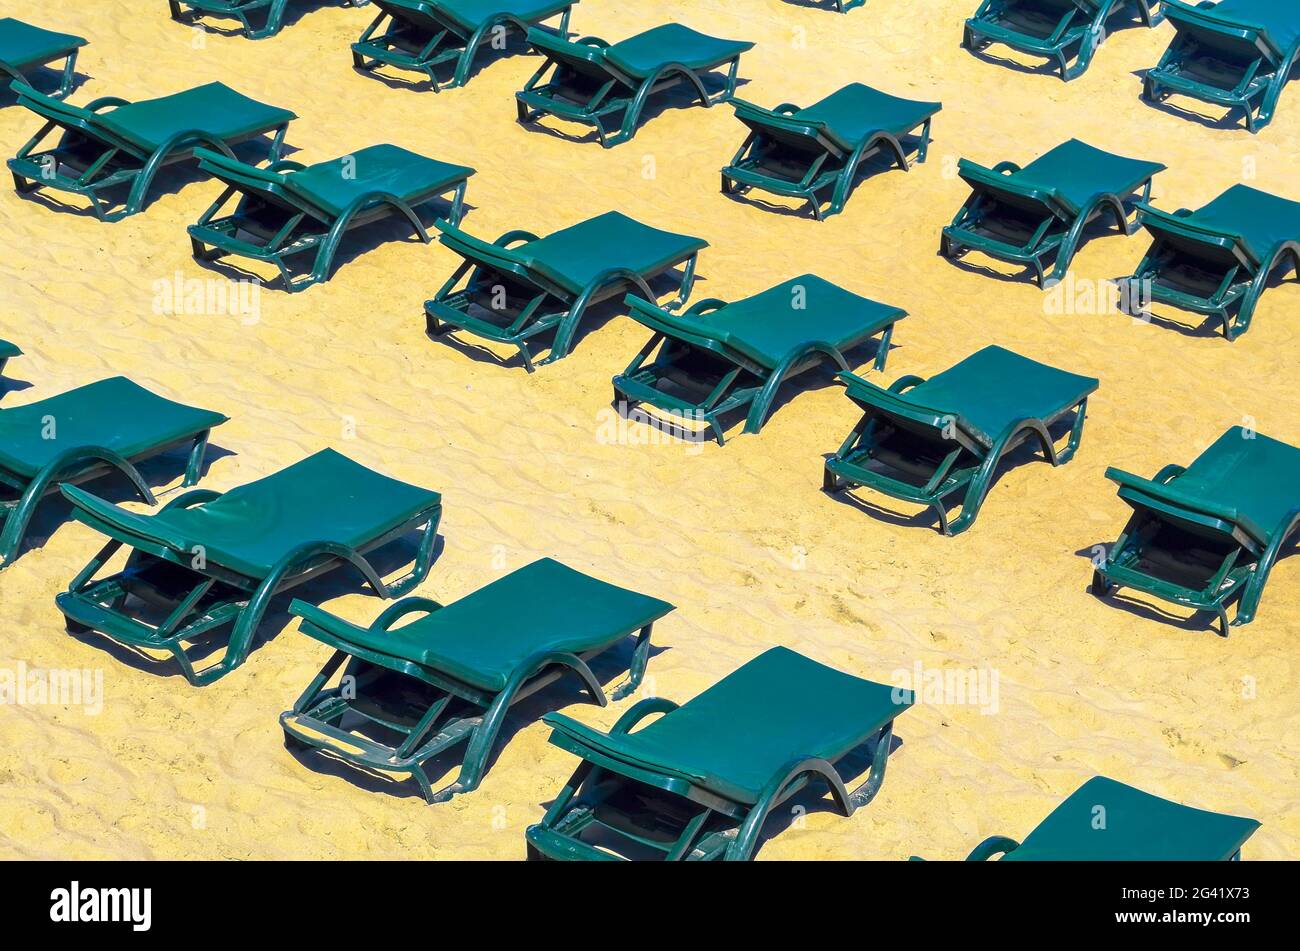 Des rangées de chaises longues vertes gratuites sur une plage de sable vide. Fermé concept de vacances ou basse saison Banque D'Images